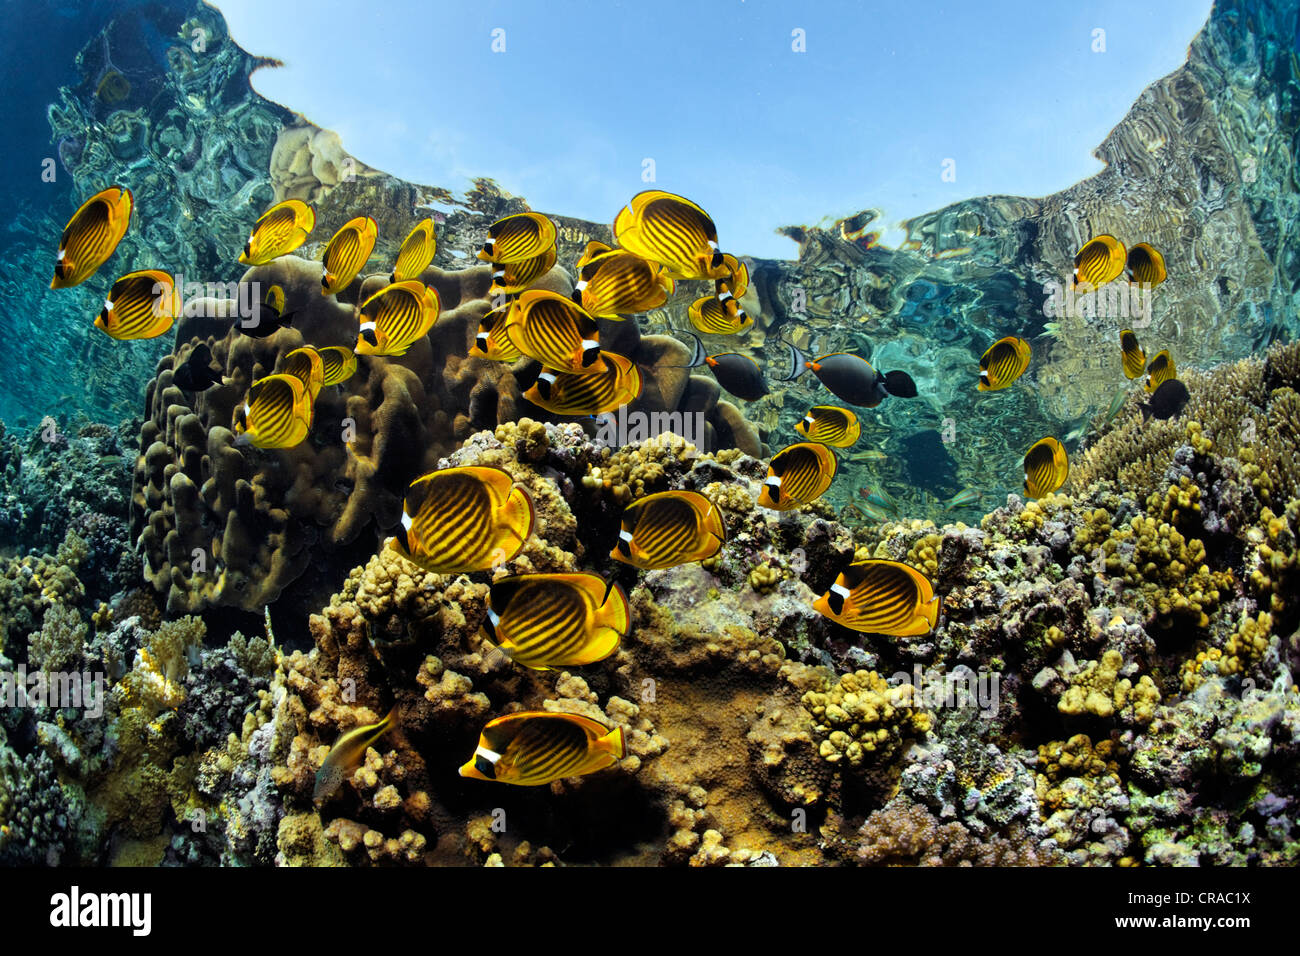 Cardumen de diagonal butterflyfish (Chaetodon fasciatus), nadar a lo largo del borde del arrecife, justo debajo de la superficie del mar, Daedalus Reef Foto de stock